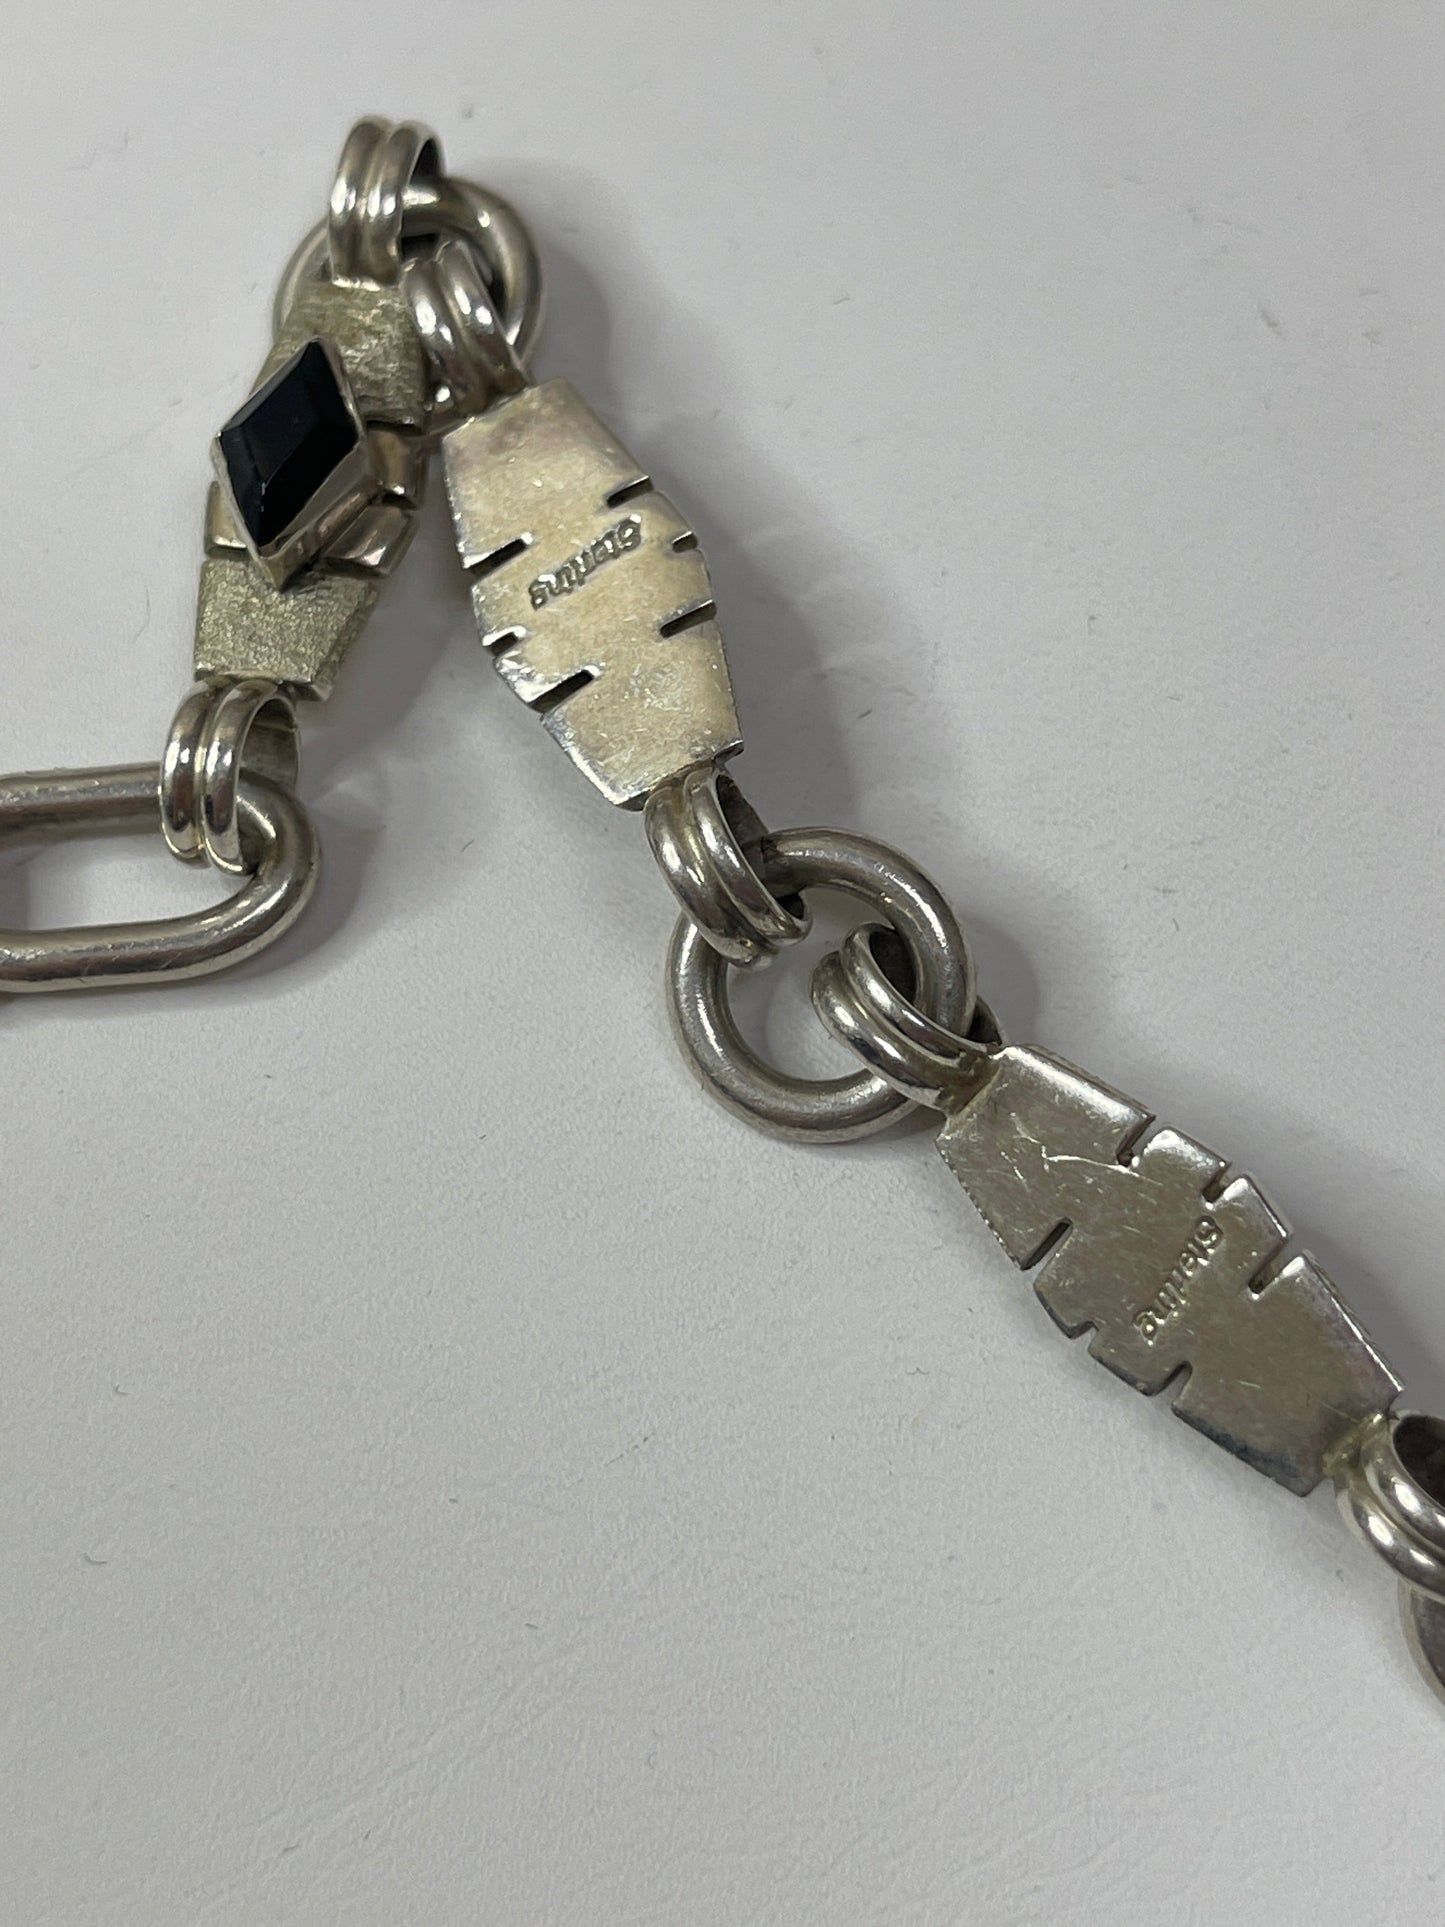 Bracelet Sterling Silver Cmb